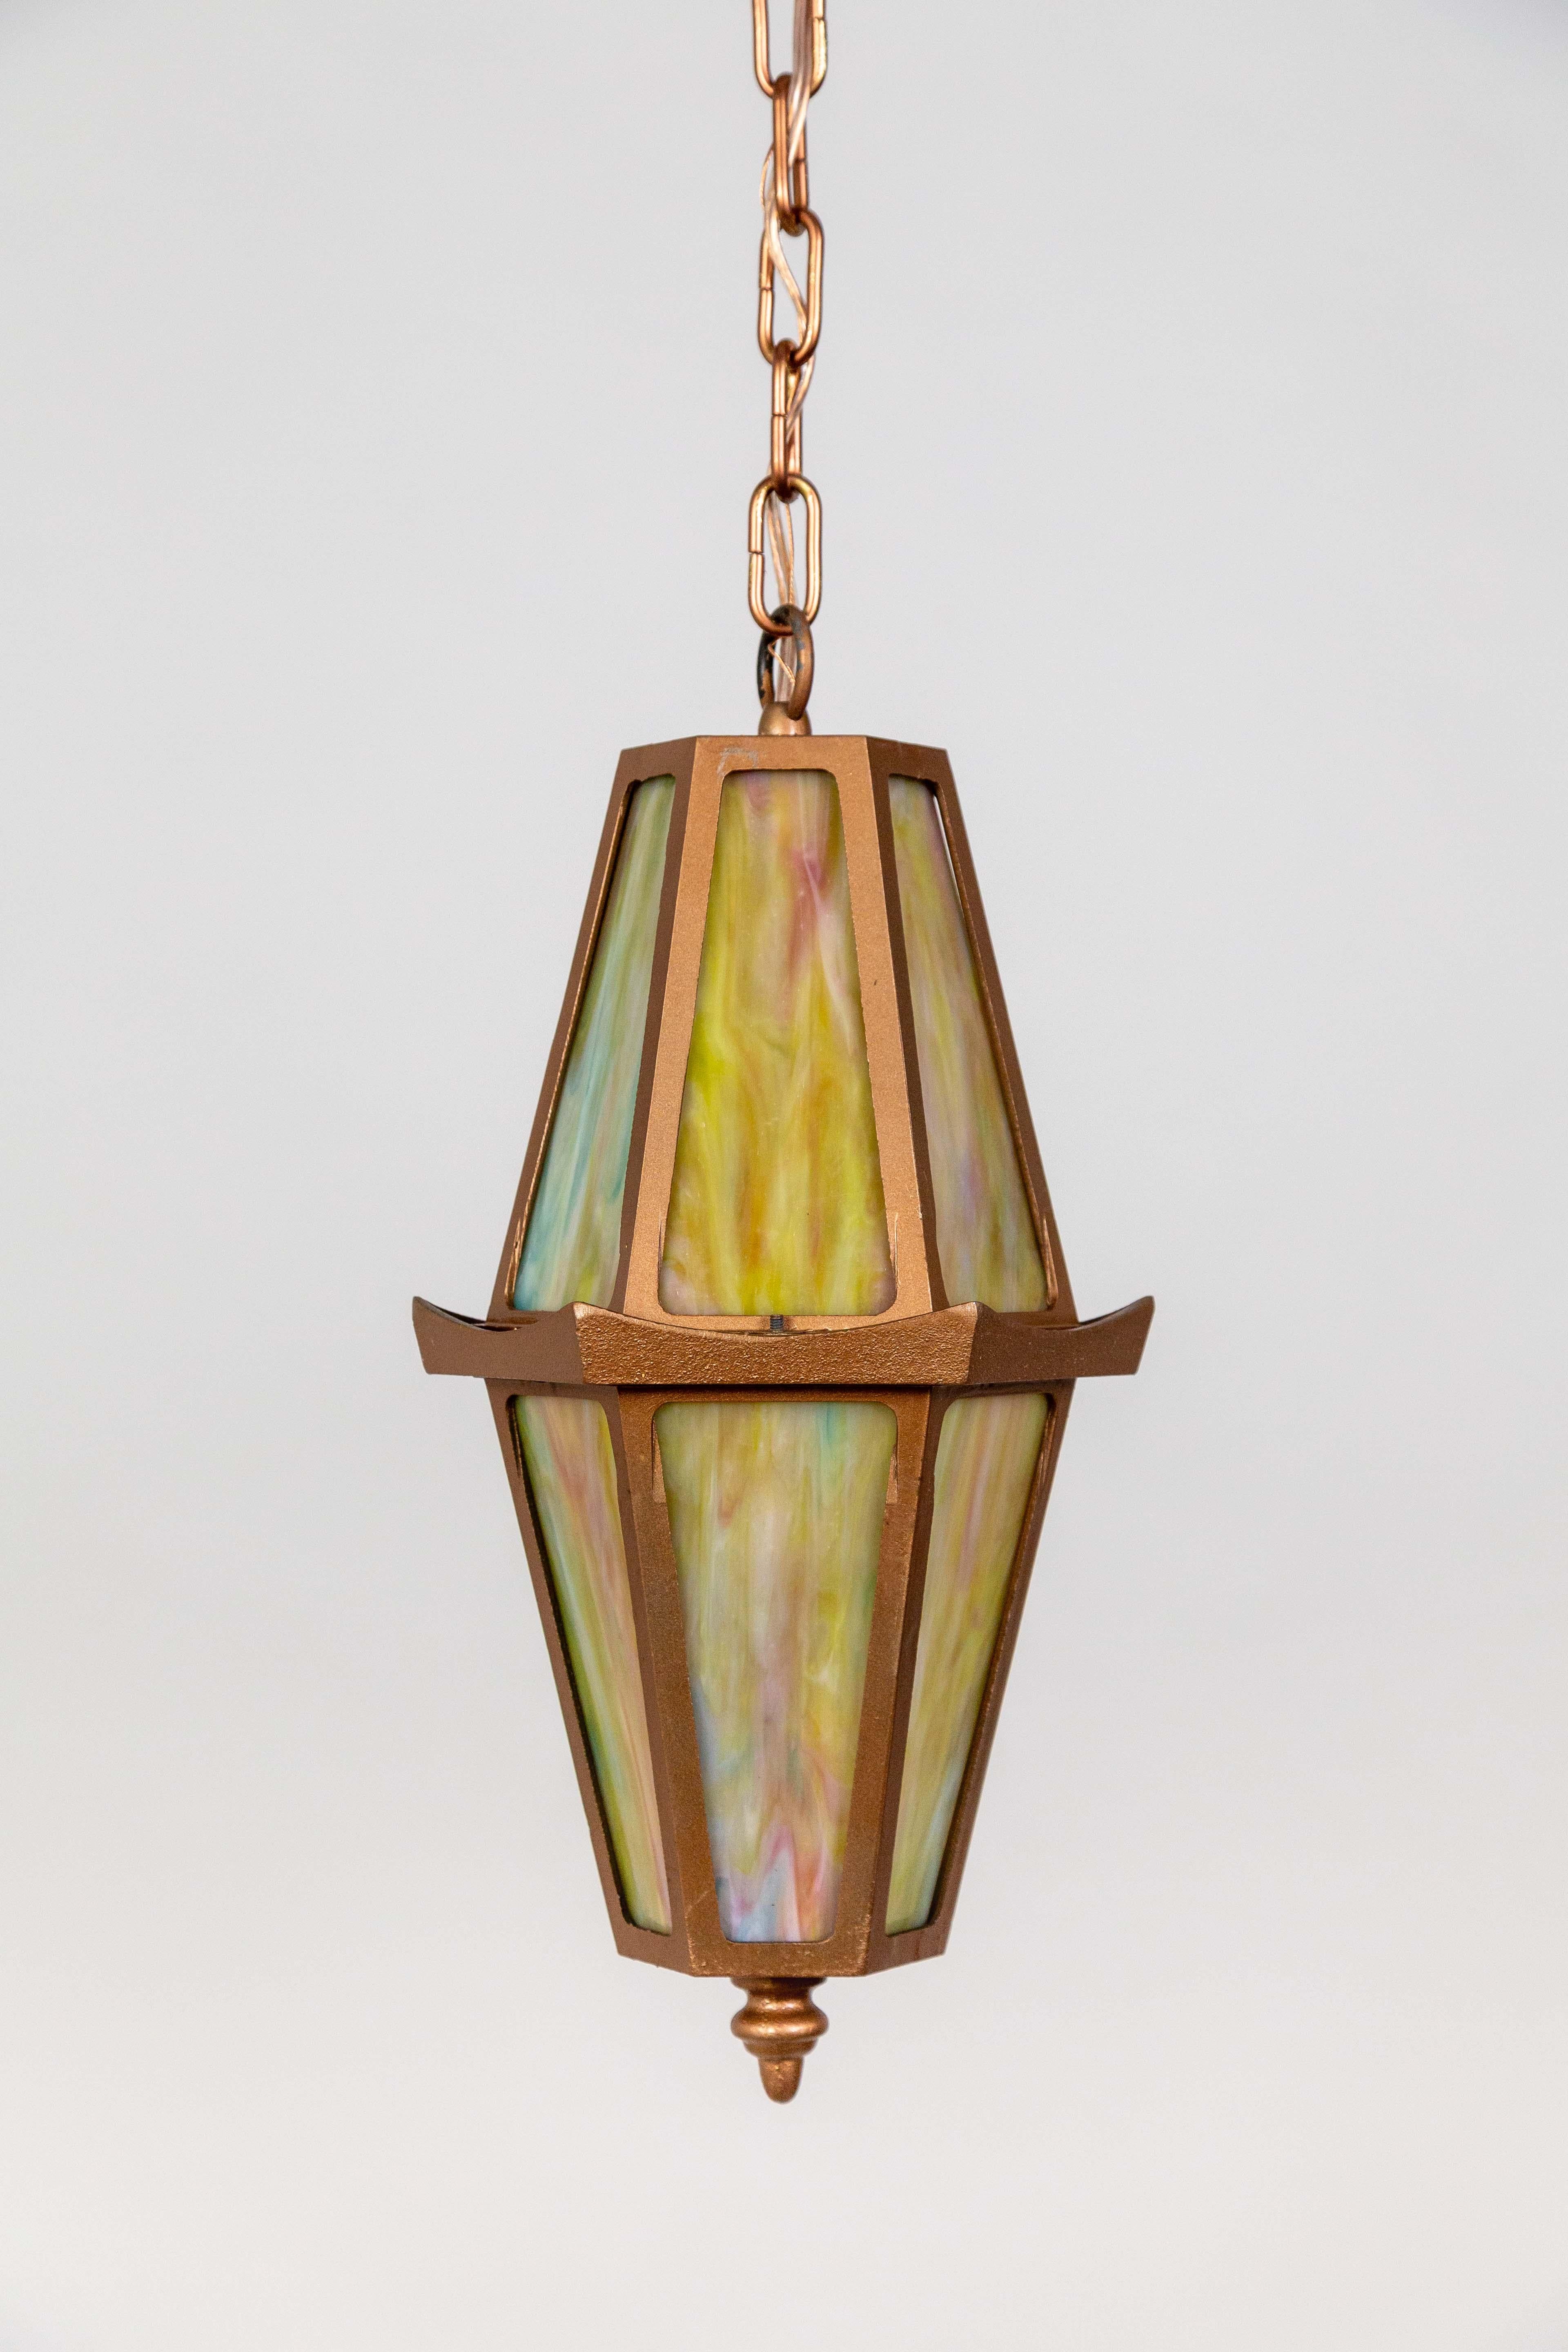 Metal Rose Gold Slag Glass Hanging Lantern For Sale